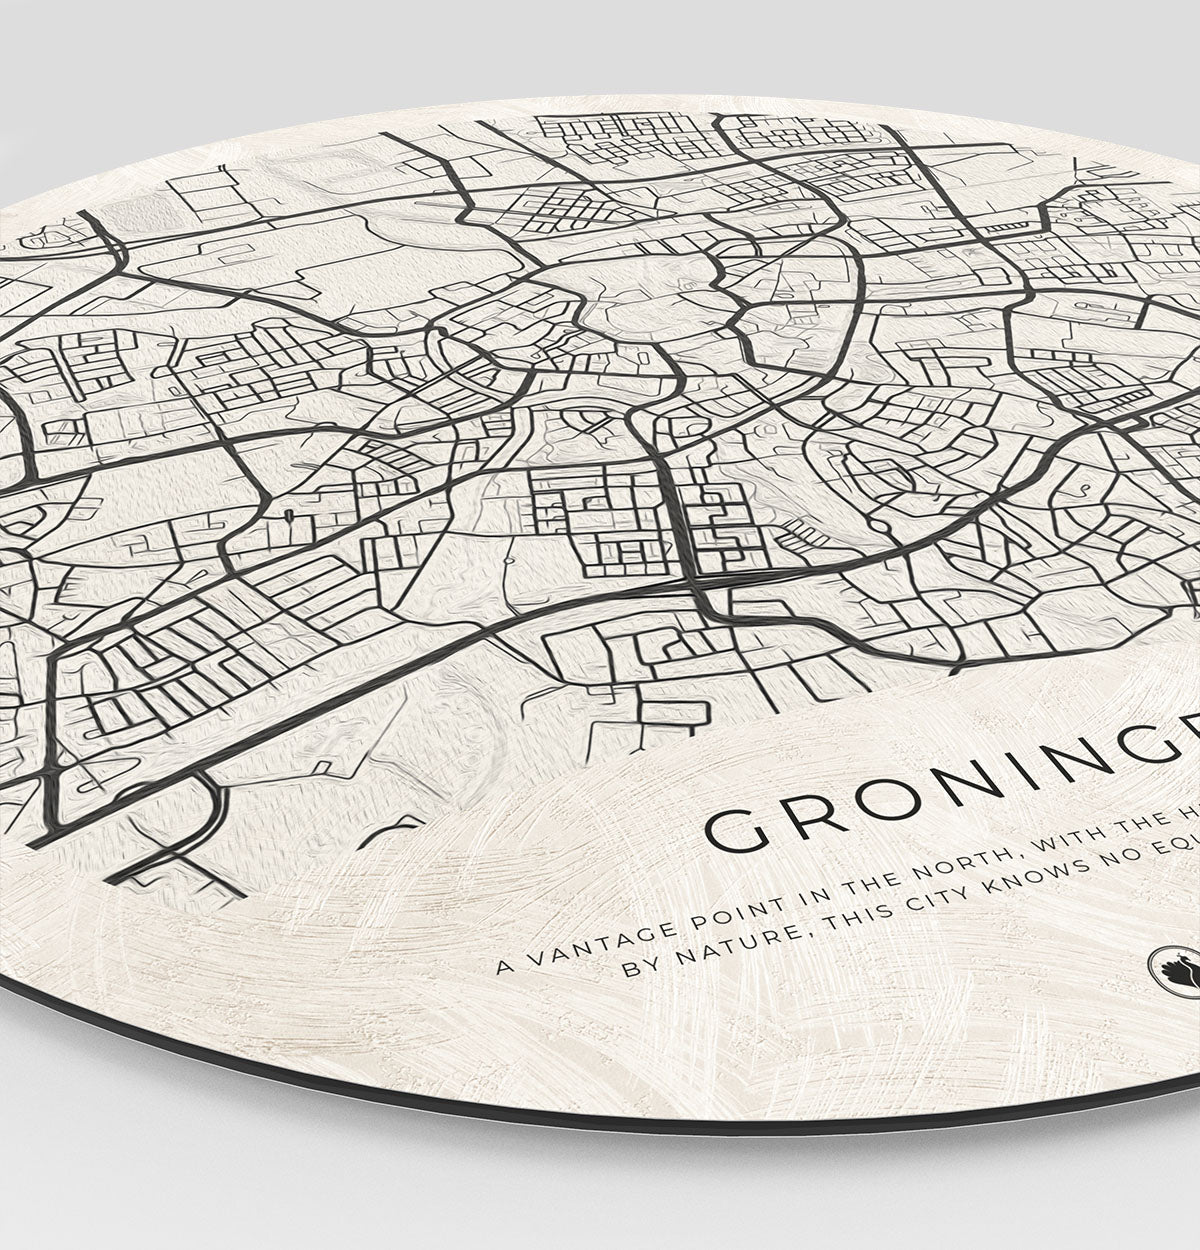 Wandcirkel met de stad Groningen zijkant